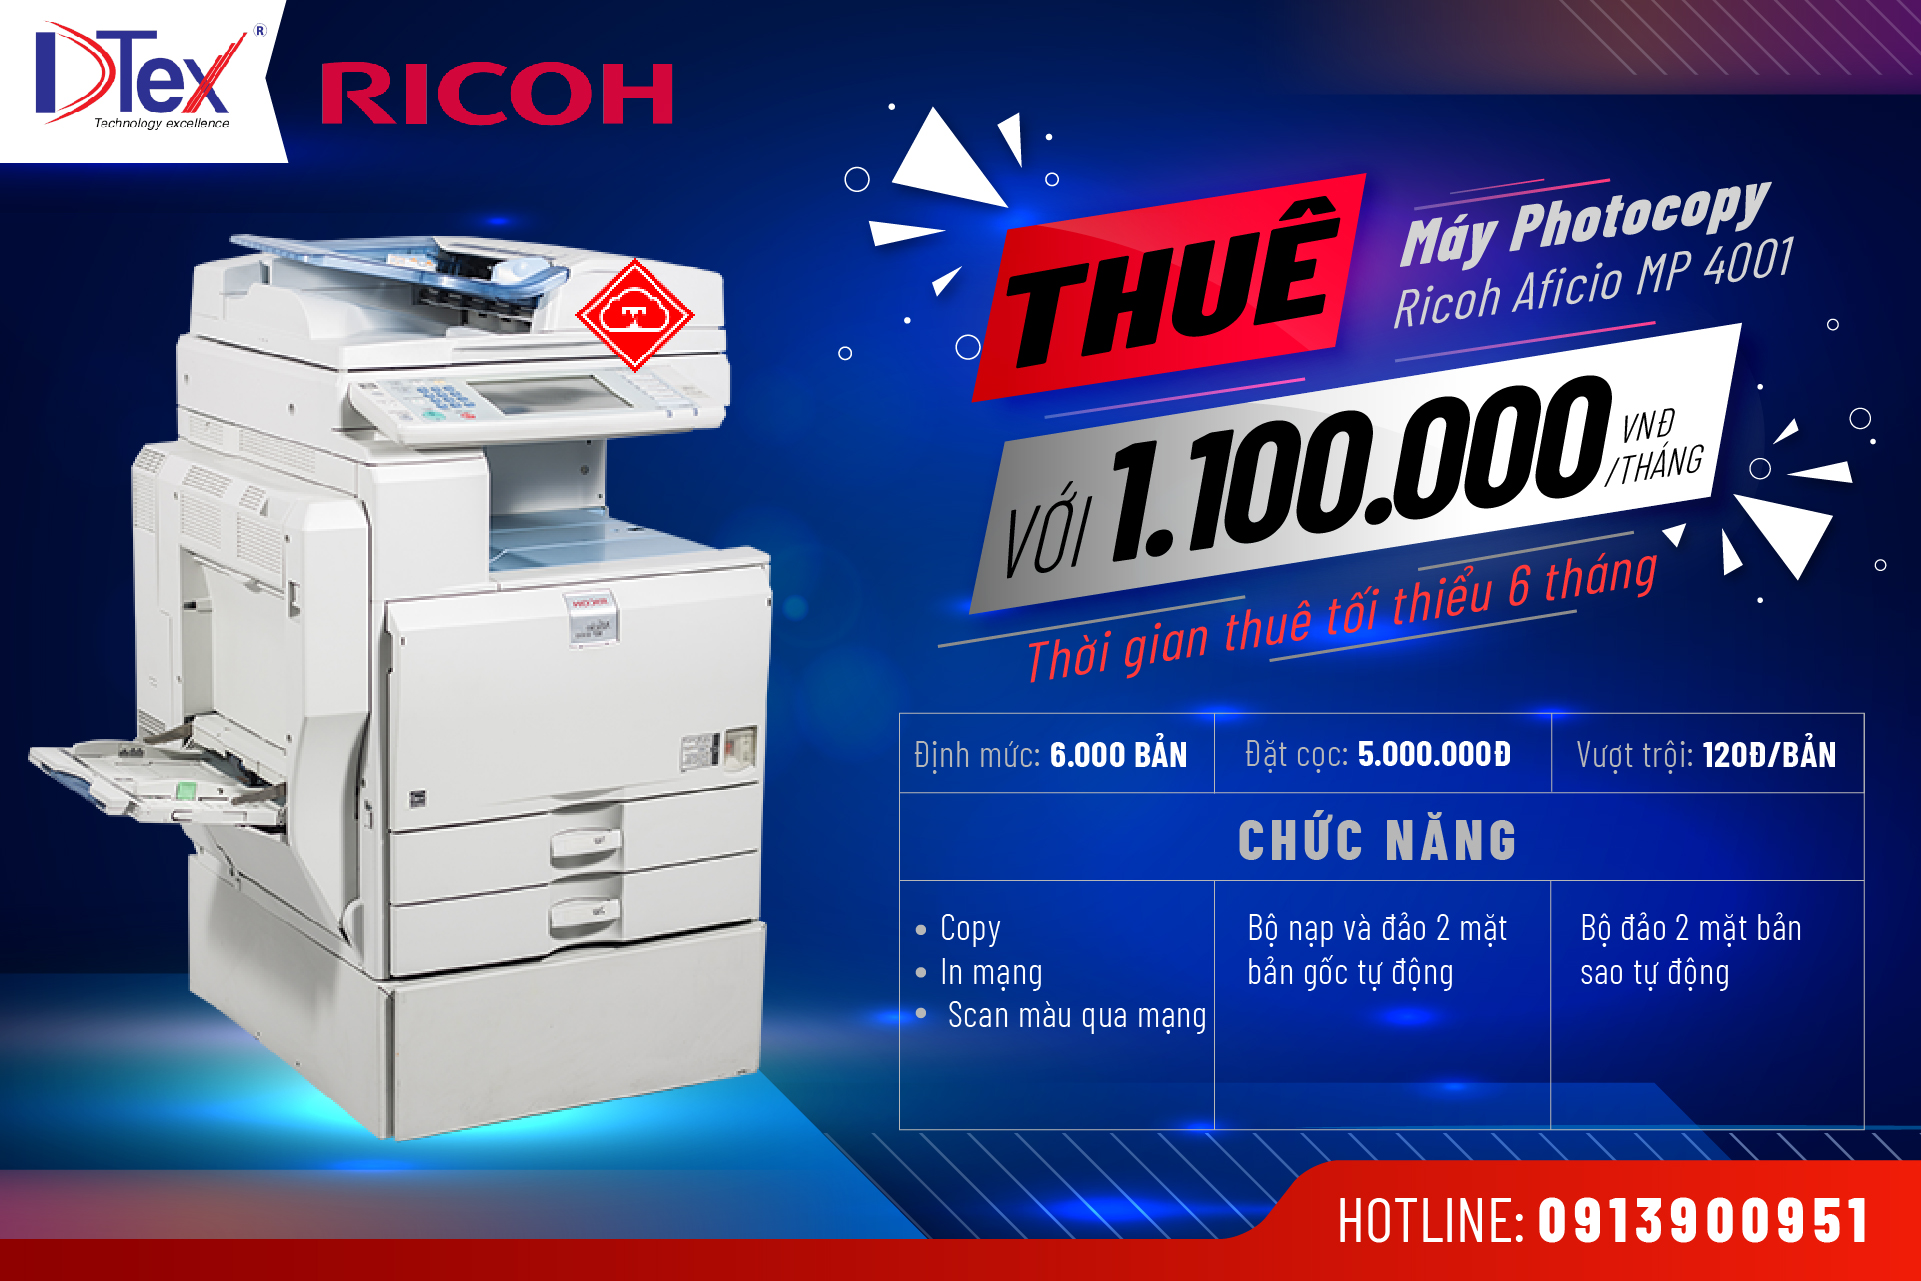 DTEX Báo giá dịch vụ cho thuê máy Photocopy Ricoh Aficio MP 4001 tại TPHCM